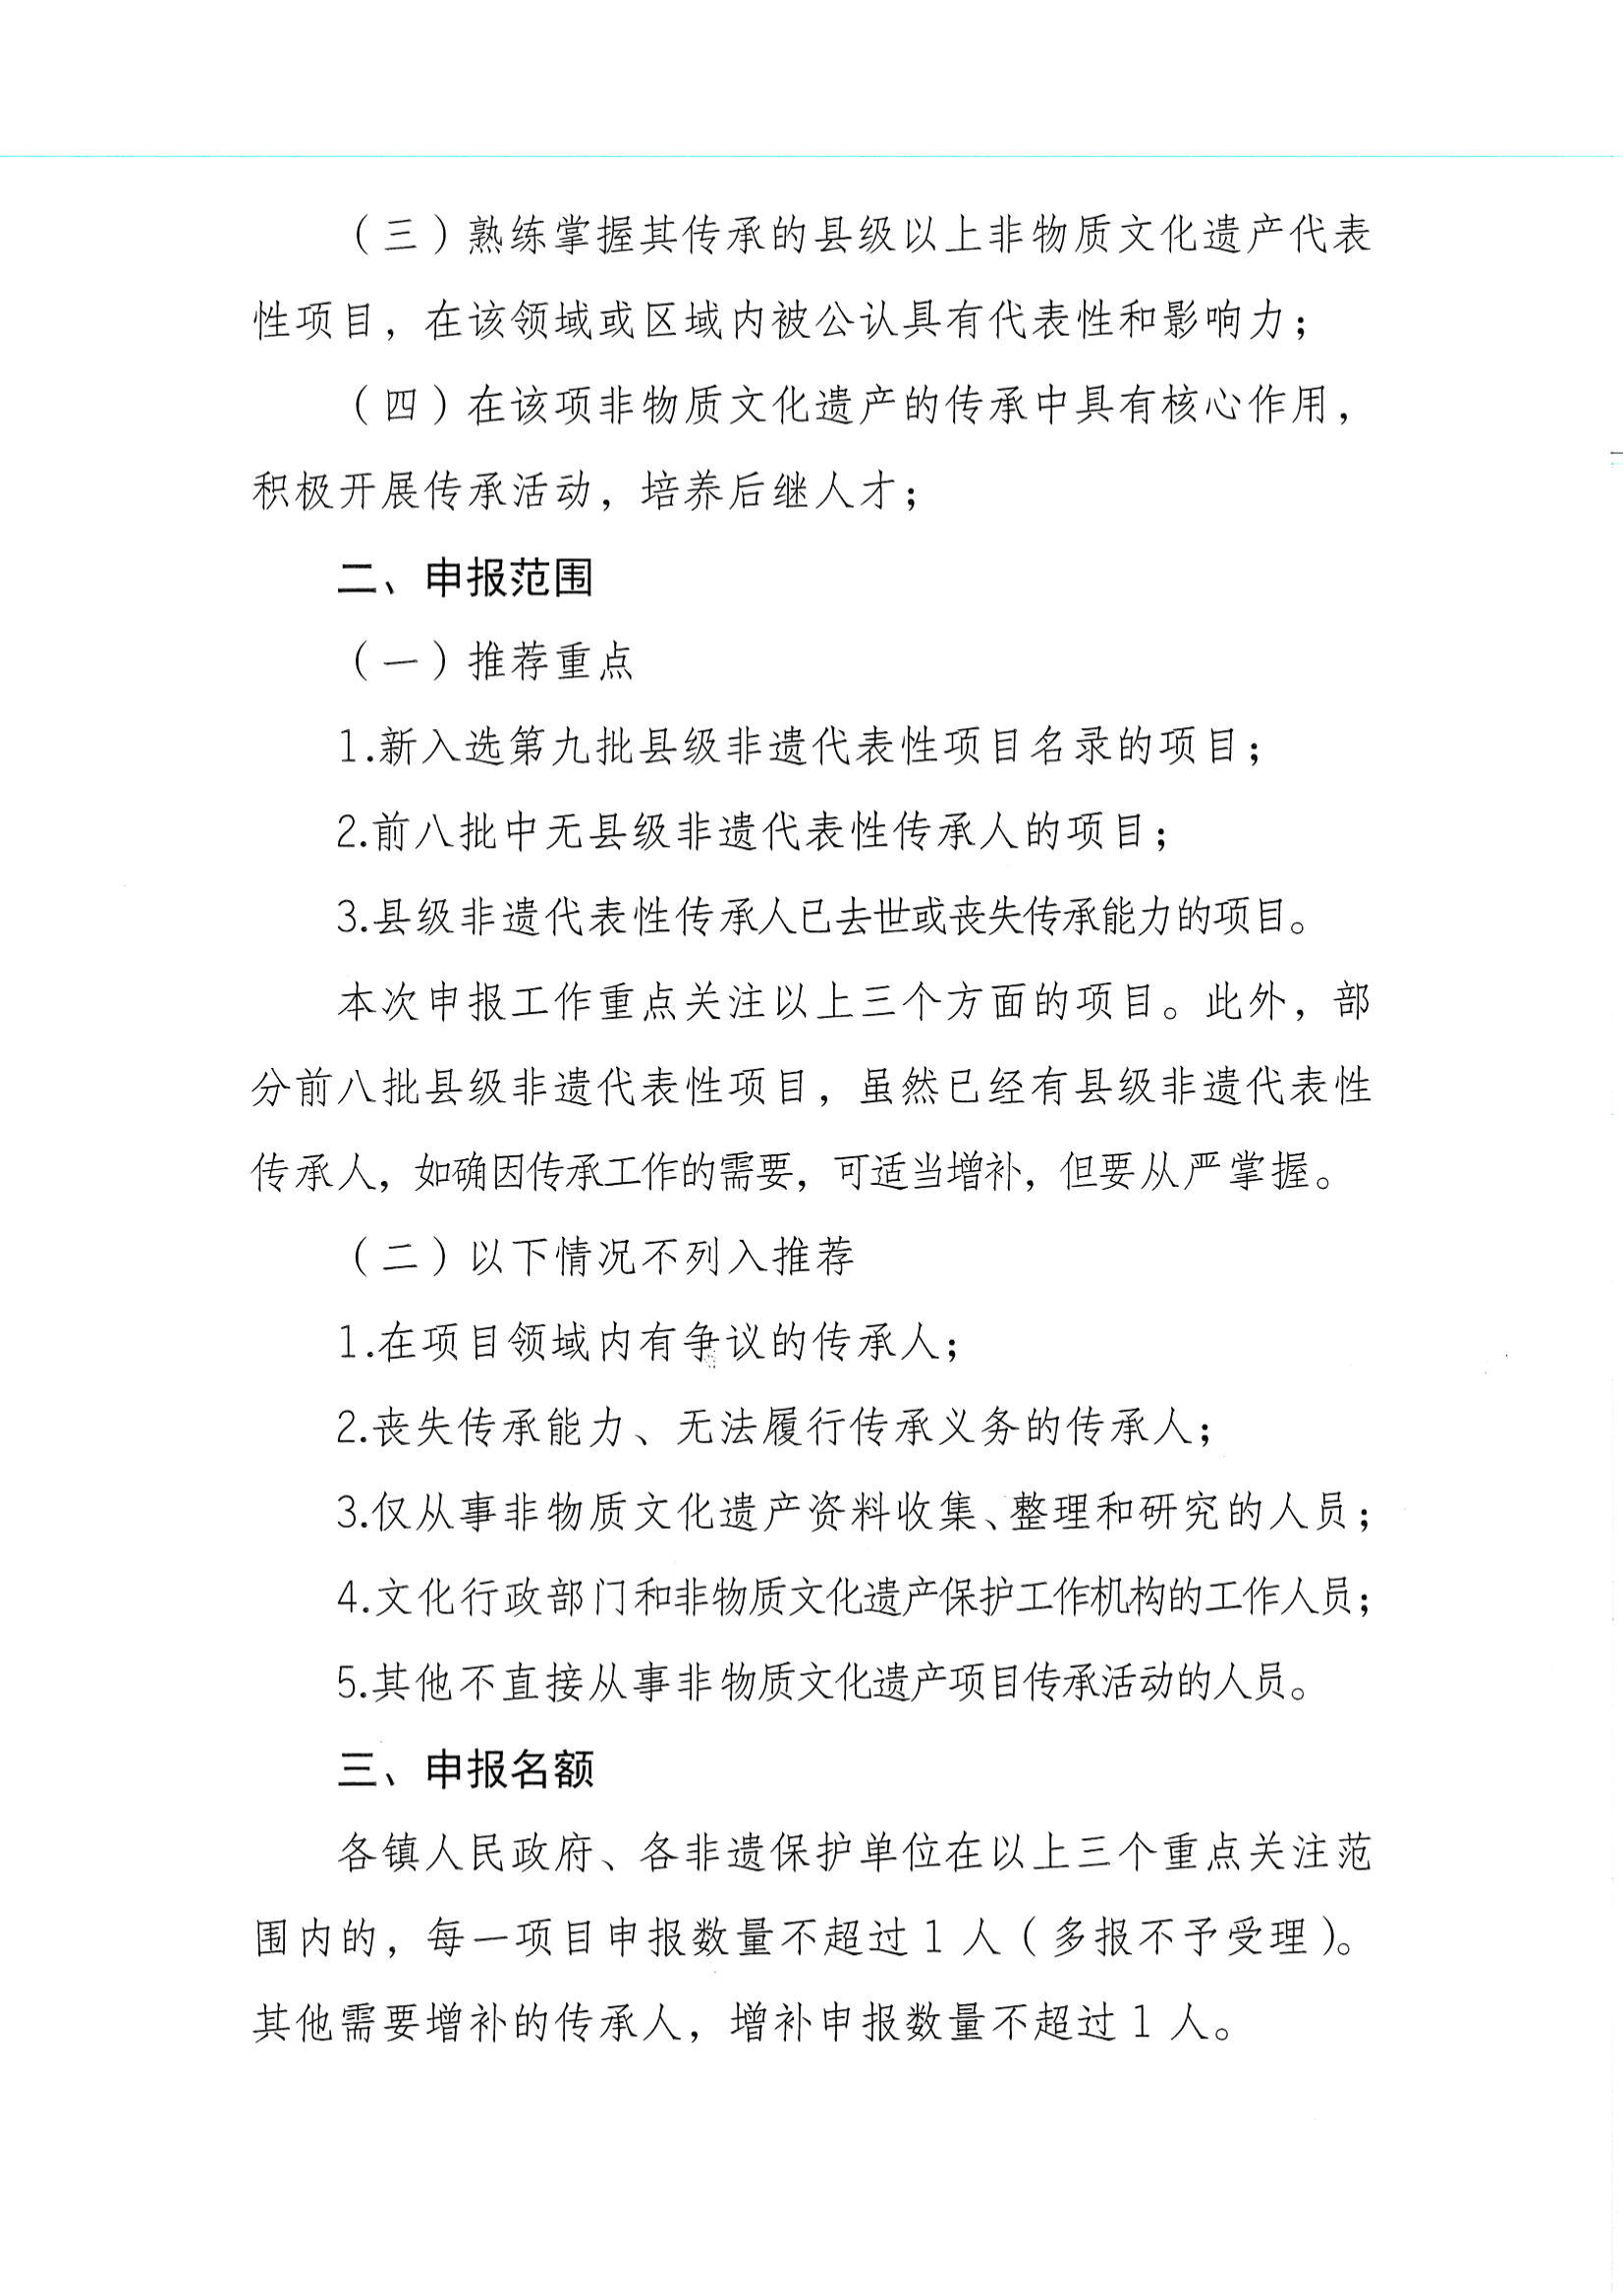 华文广旅体字〔2021〕23号  项目代表性传承人申报工作的通知_01.png